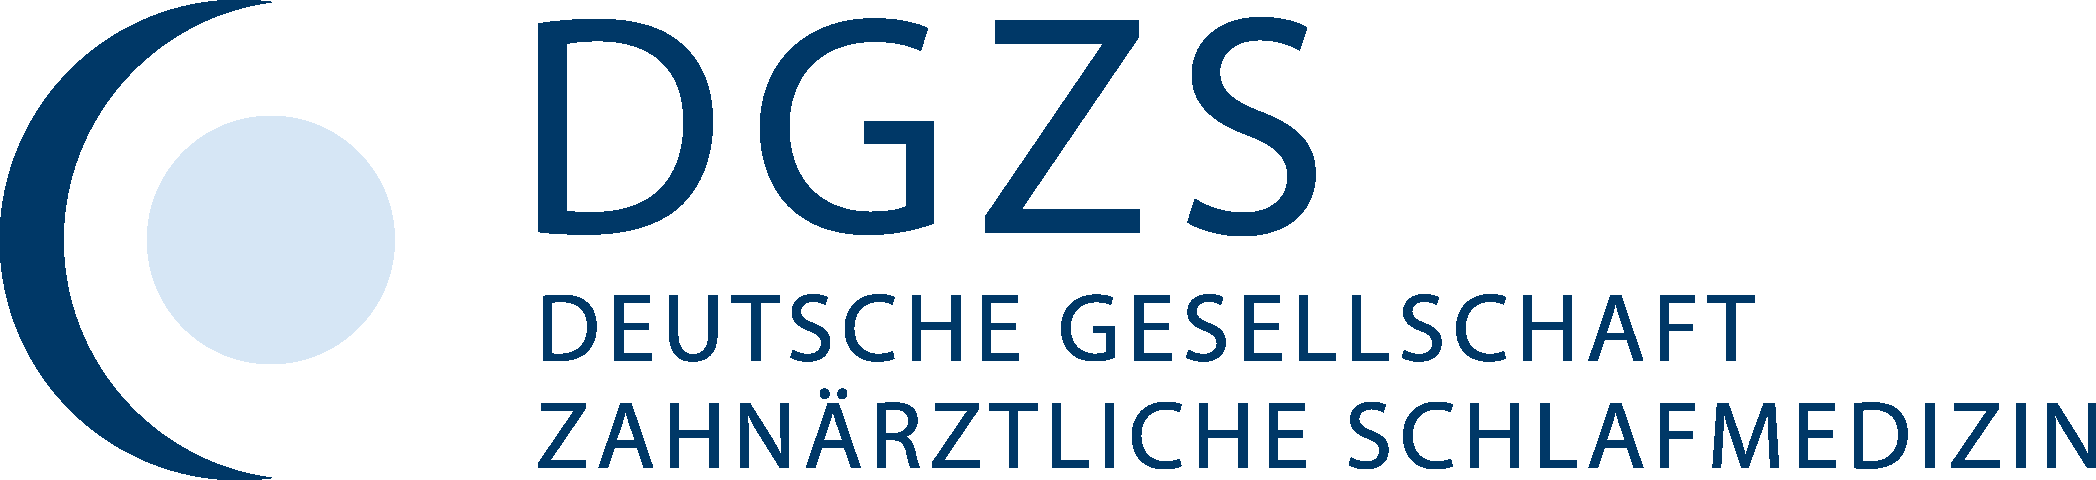 DGZS Logo 4c v2